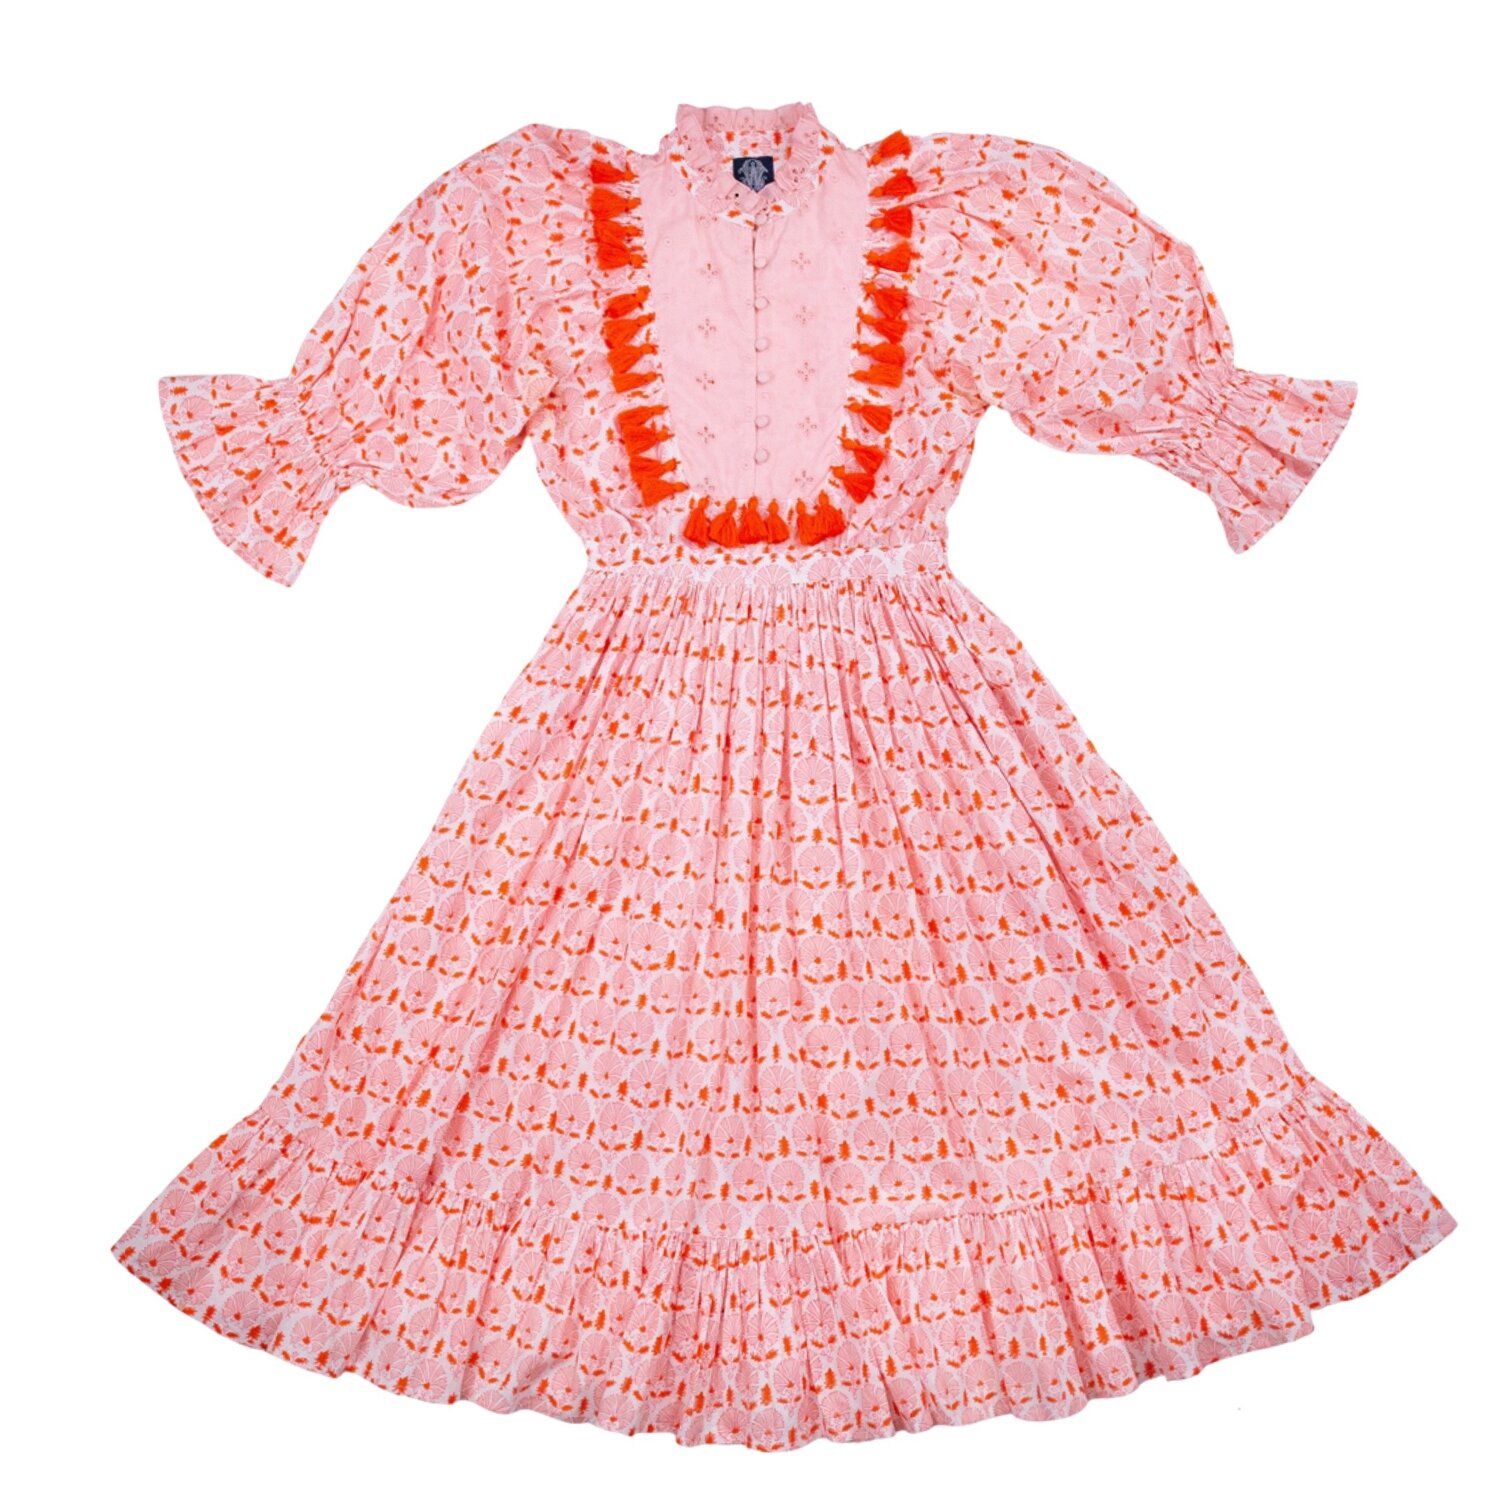 Lottie Dress in flower motif print — Elizabeth Wilson | Elizabeth Wilson Designs